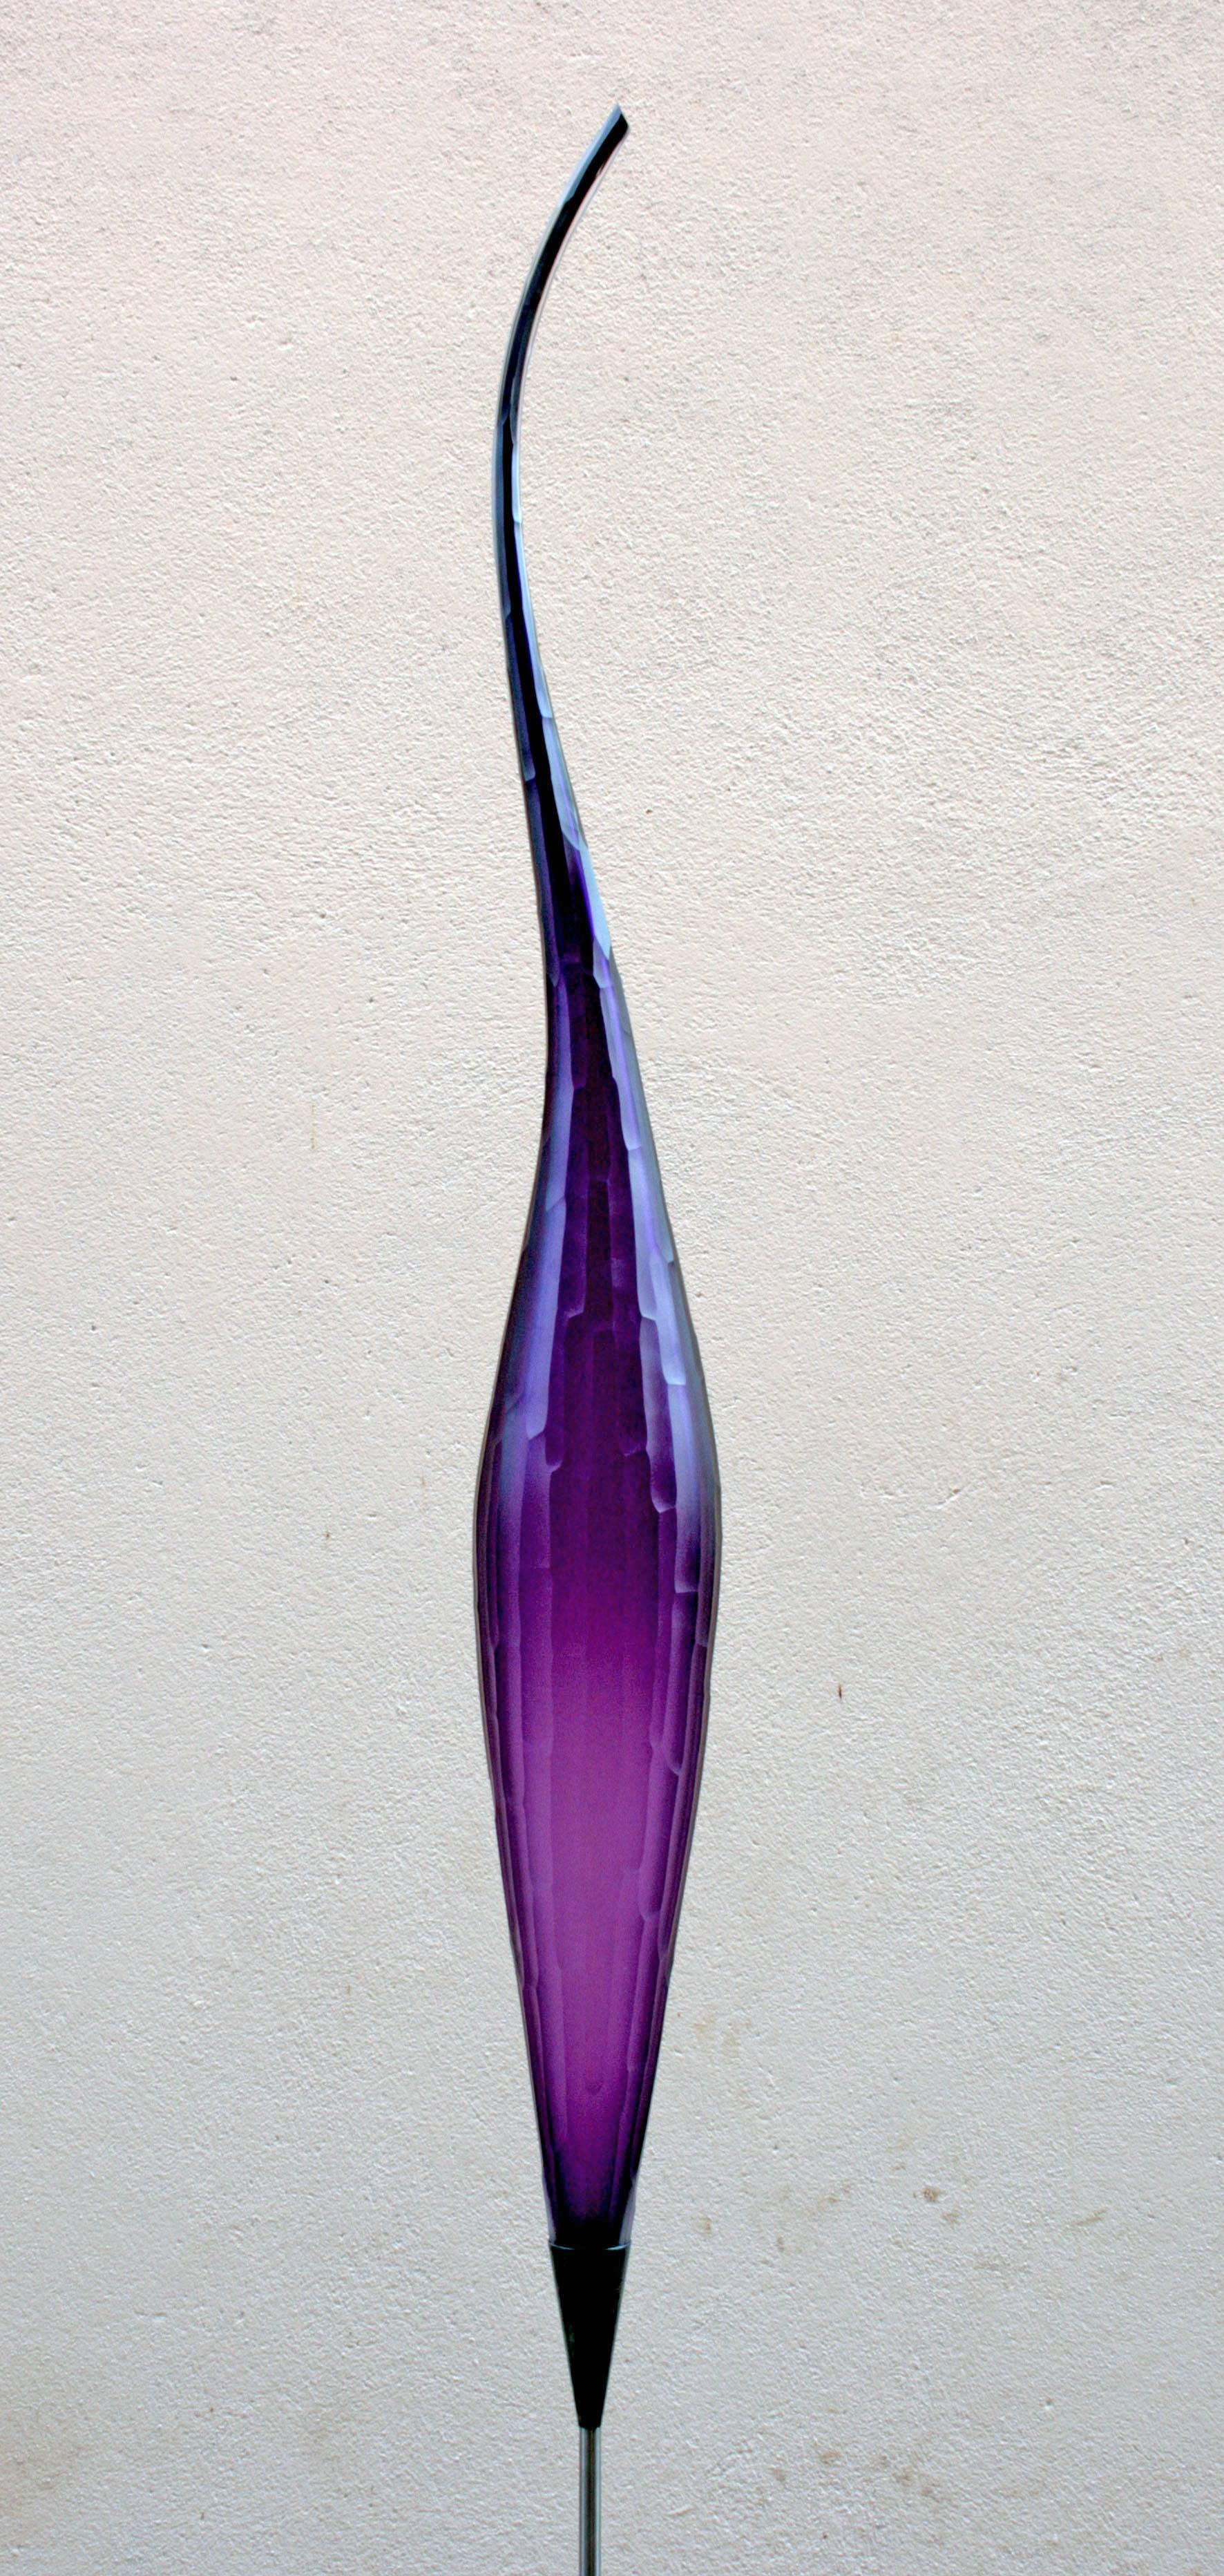 Monica Guggisberg & Philip Baldwin Abstract Sculpture - The Violet Zephyr